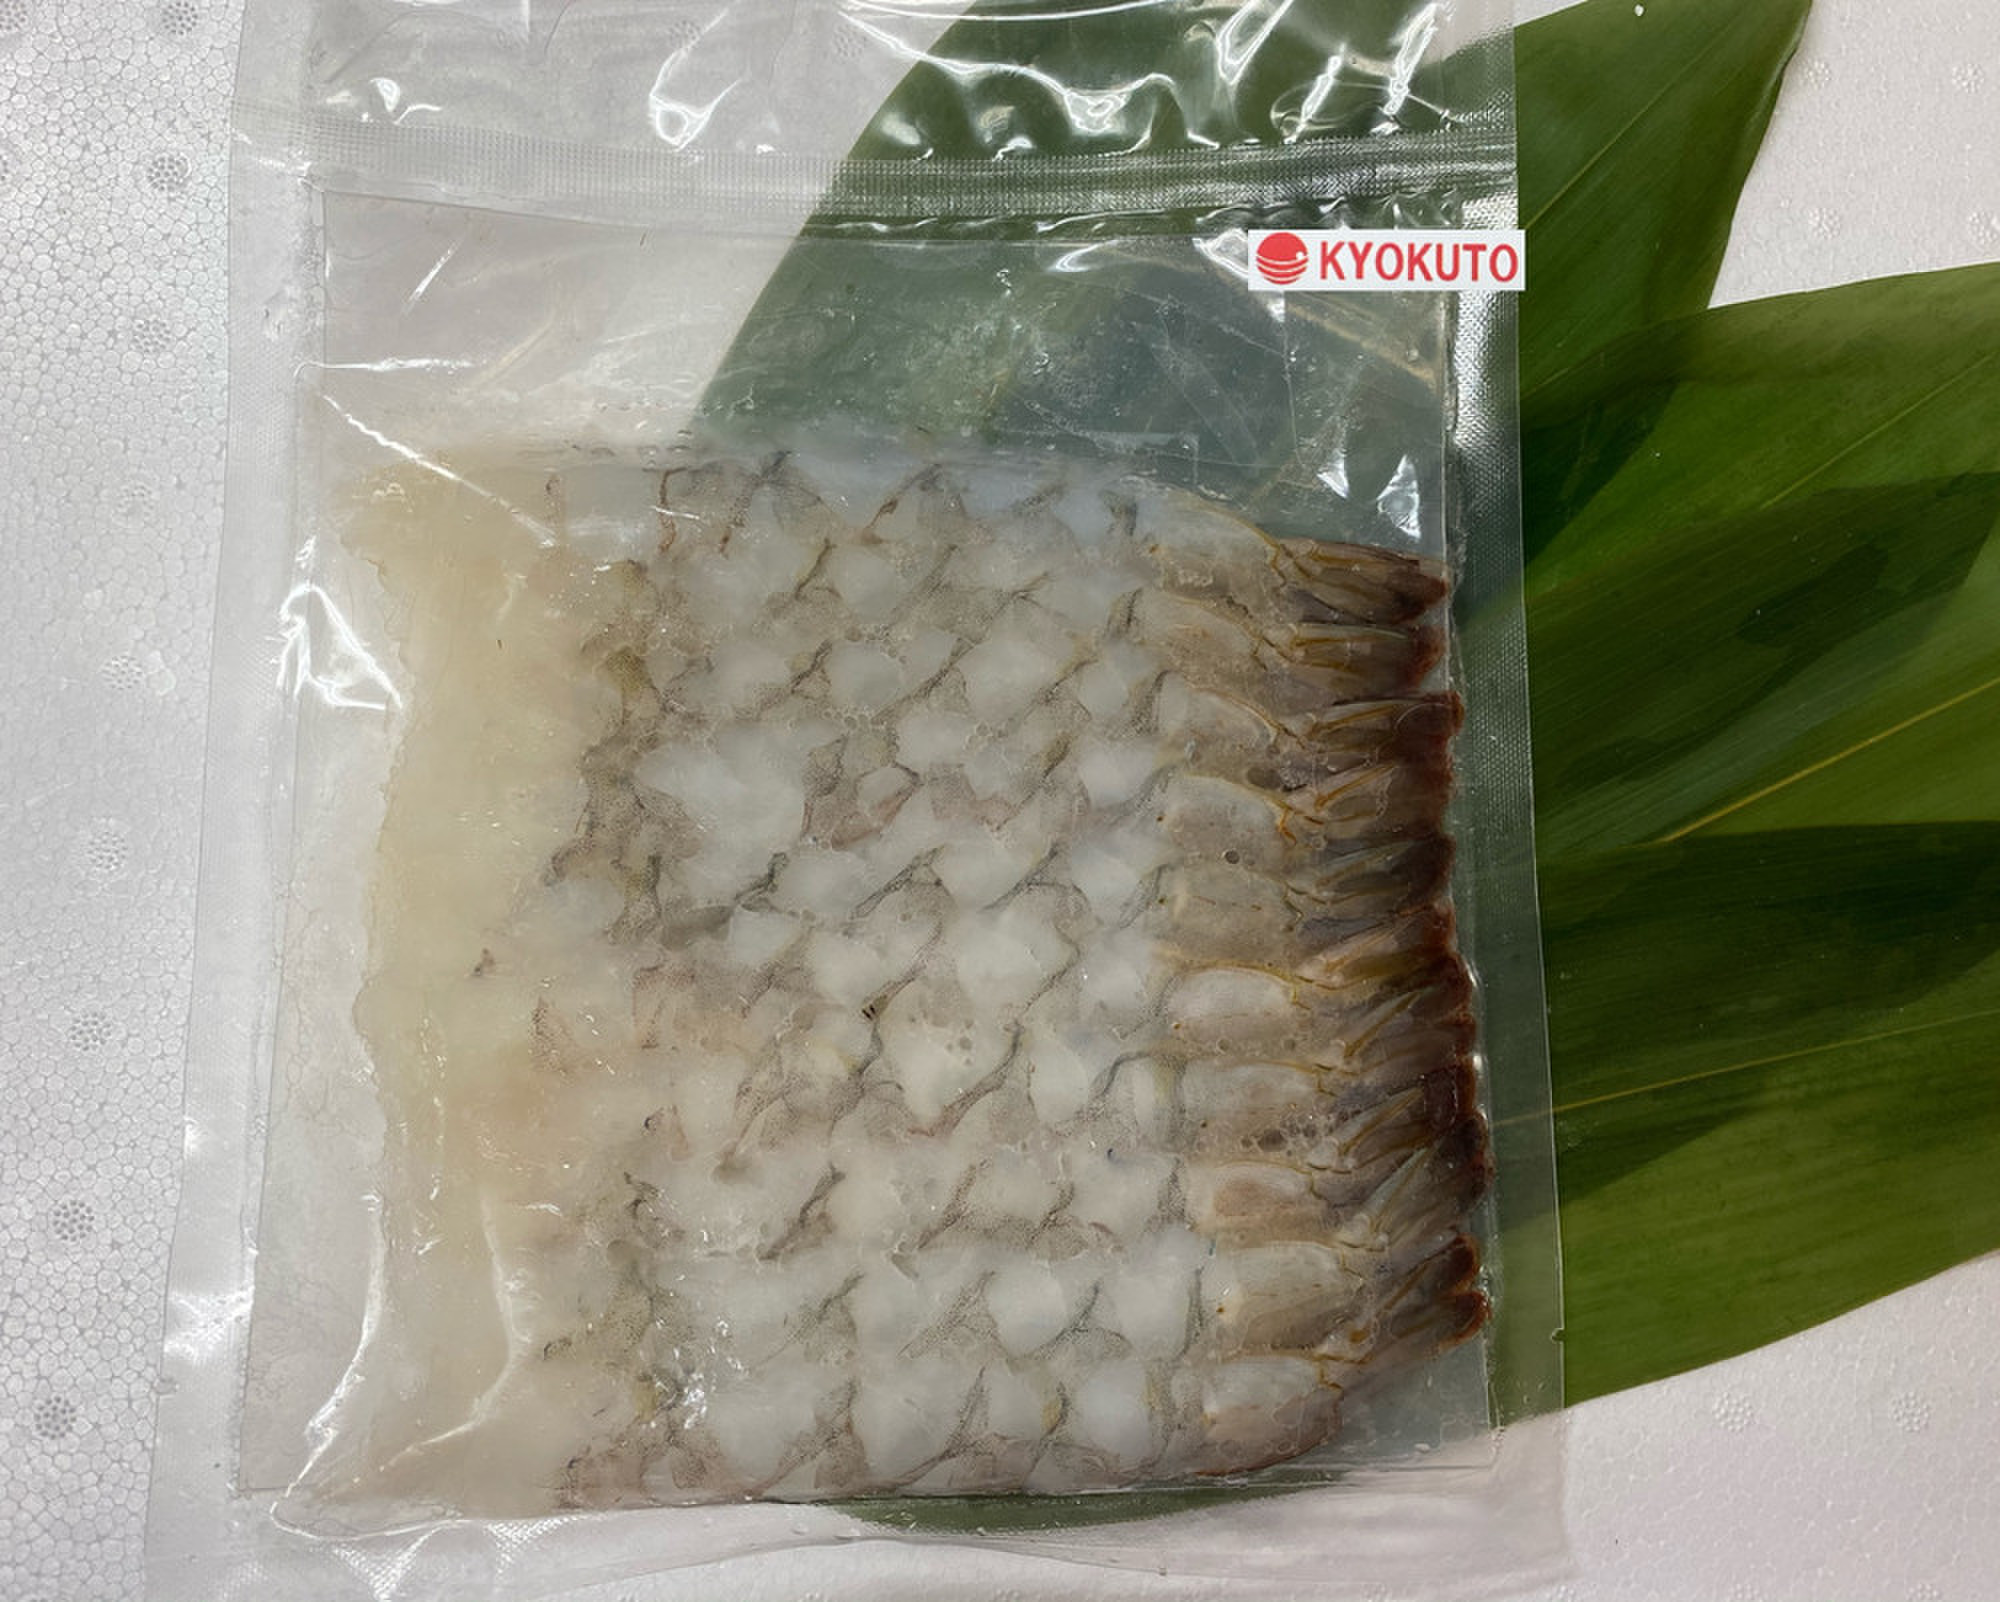 バナメイ尾付き伸ばしエビ 10尾パック 解凍 養殖 クックパッドマート 毎日が楽しみになる 食材店